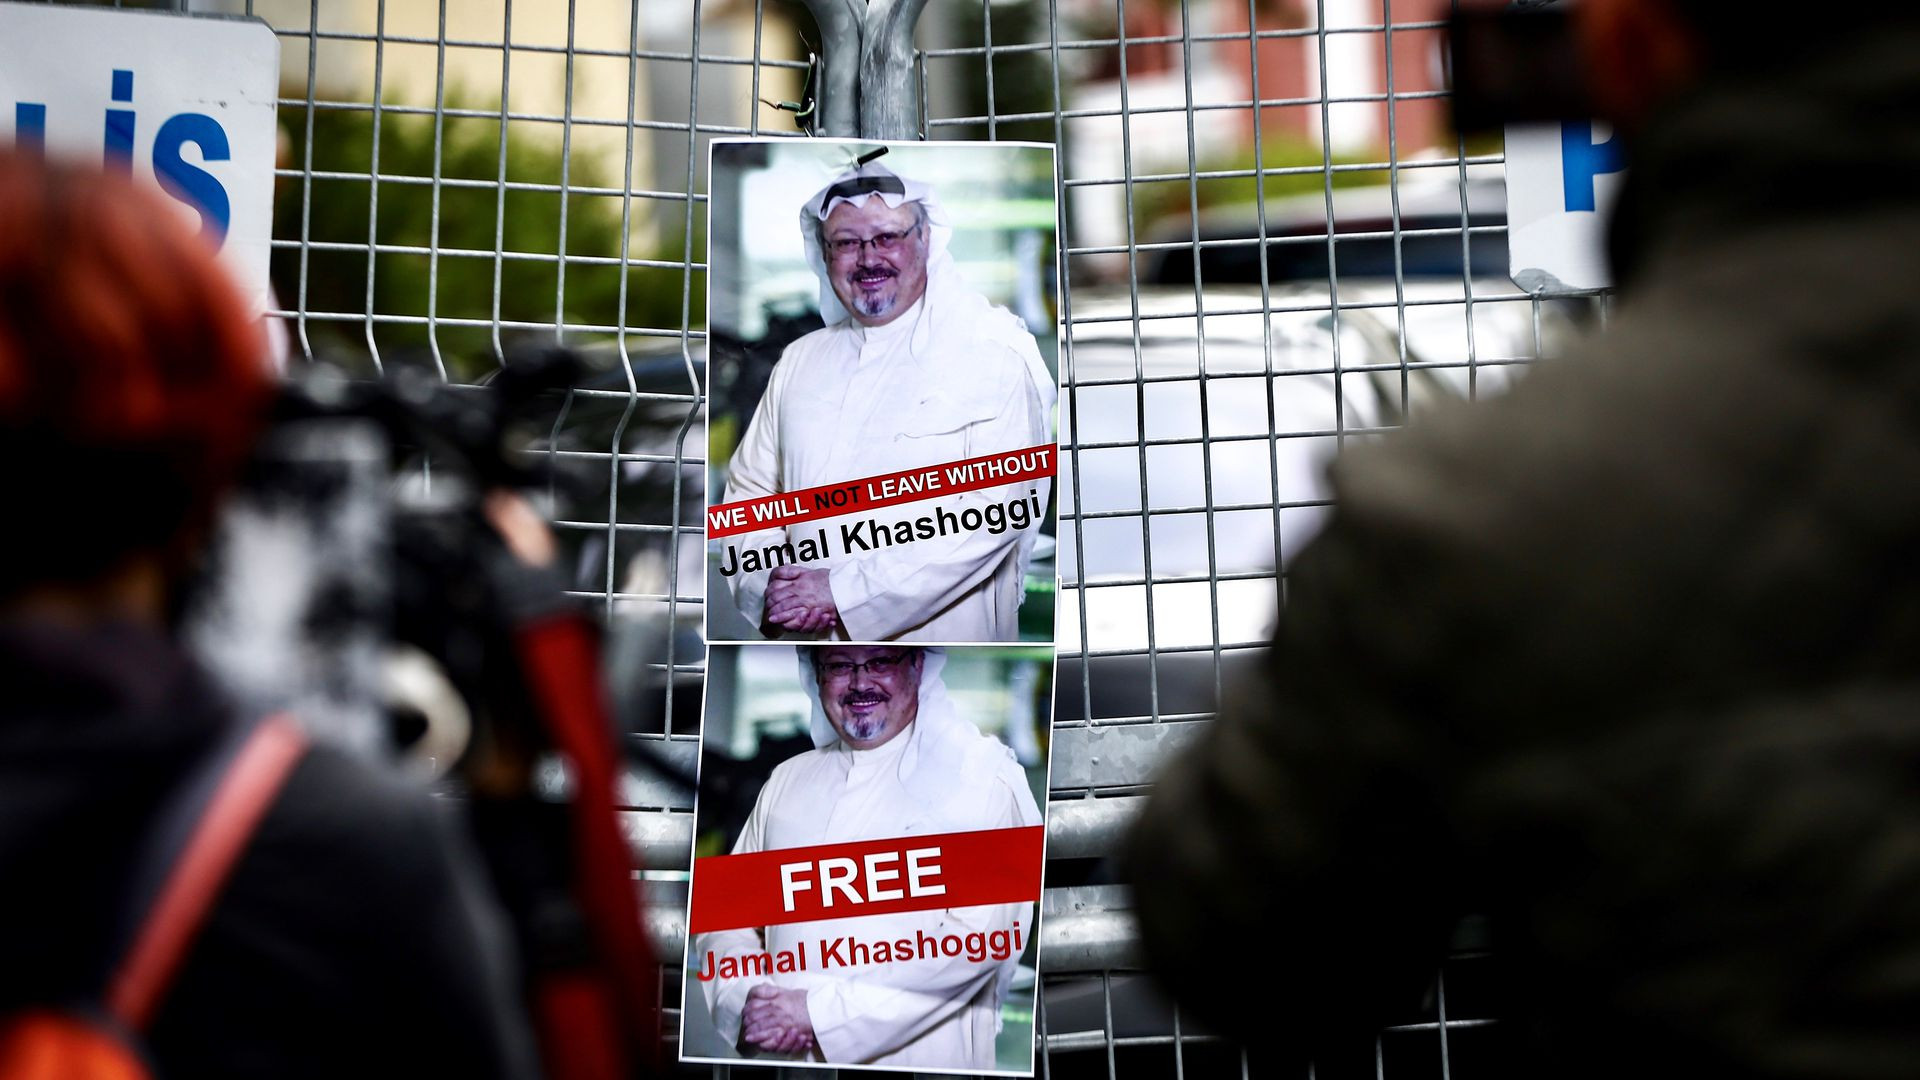 Η Σ. Αραβία παραδέχεται ότι ο Κασόγκι δολοφονήθηκε μέσα στο προξενείο της